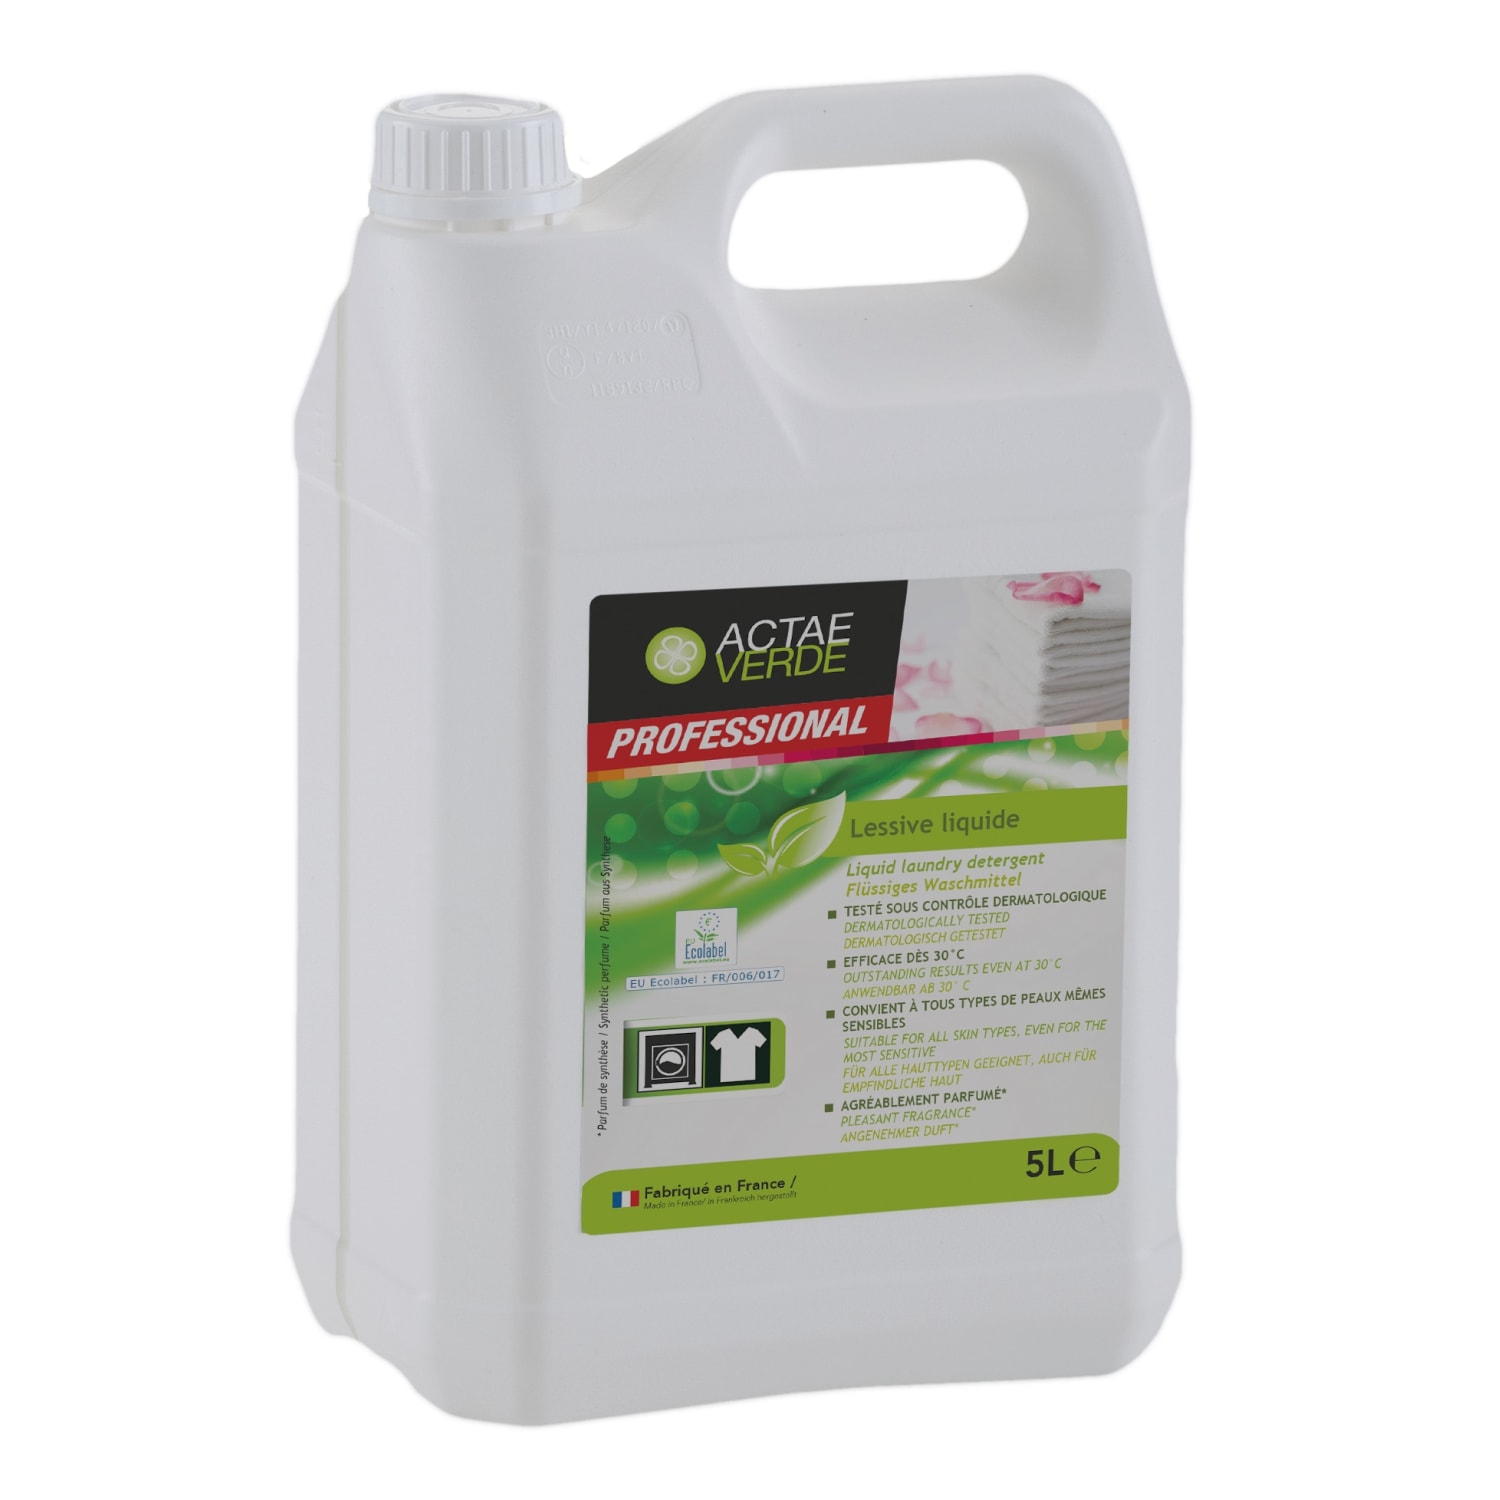 Actae Verde lessive liquide certifiée Ecolabel bidon de 5L photo du produit